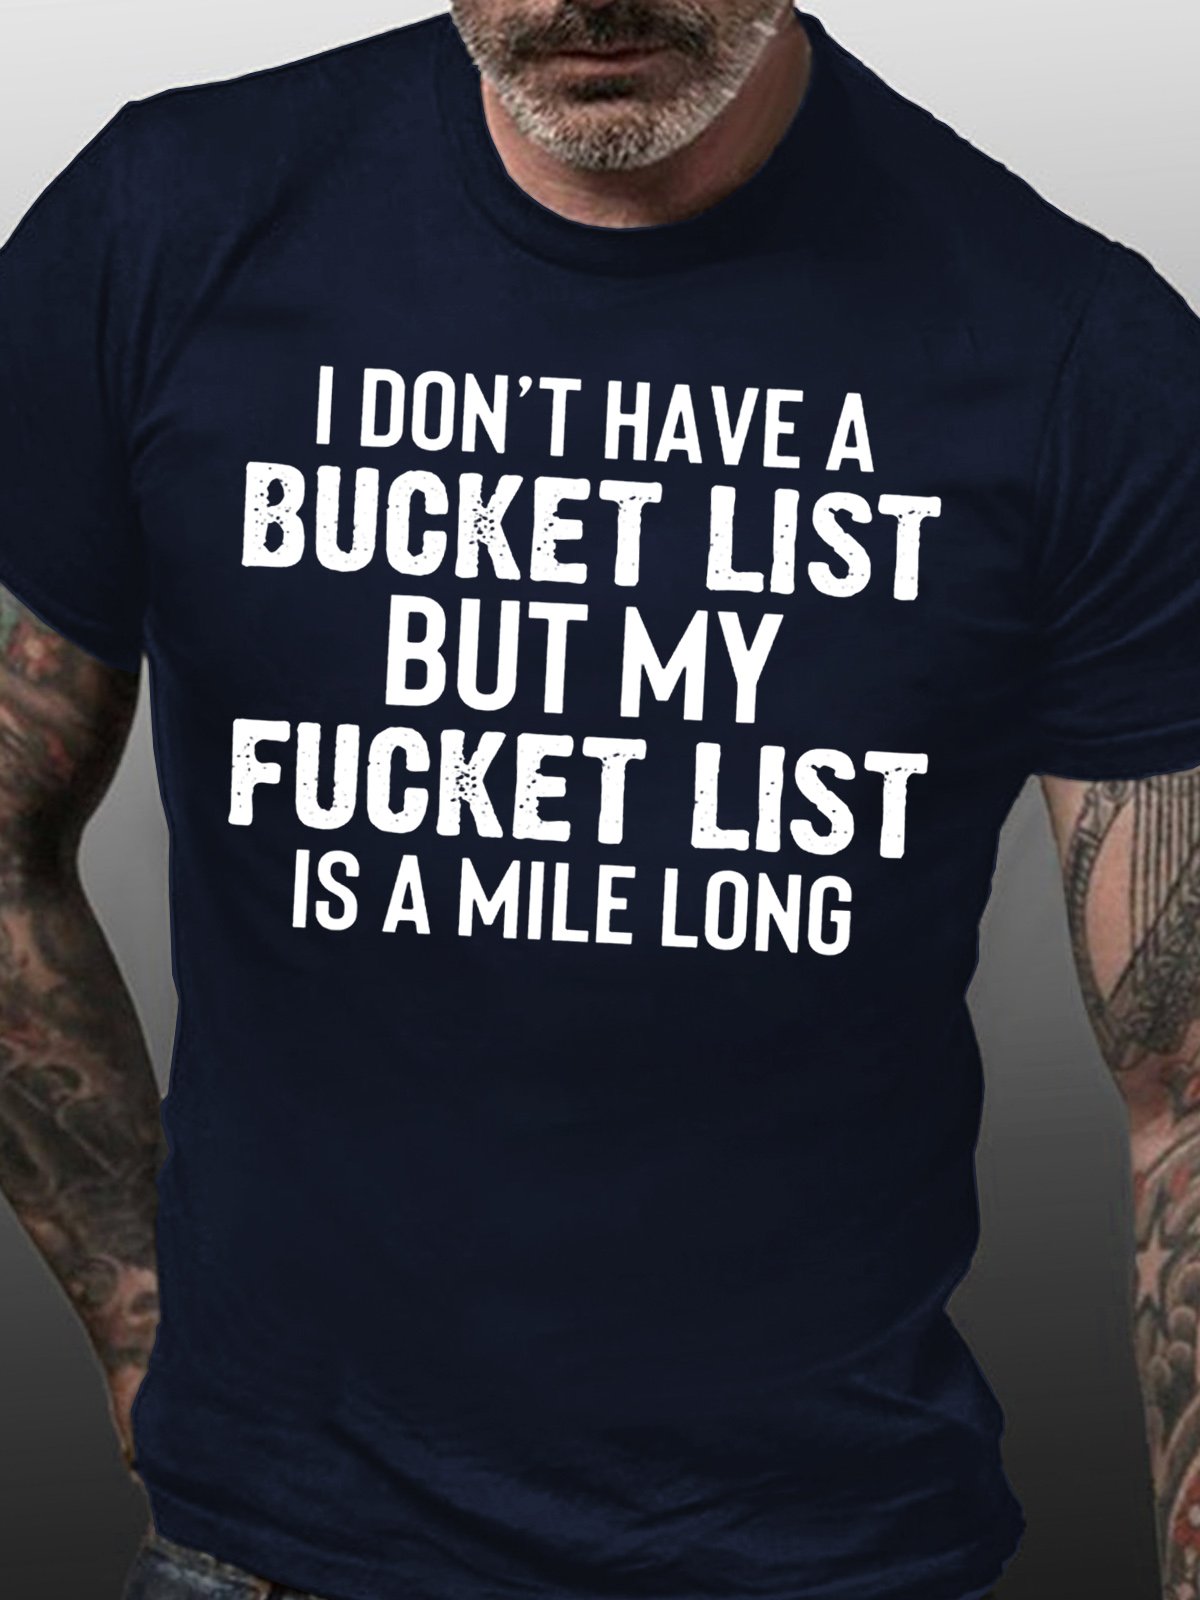 Men's Funny Letter Crew Neck Cotton T-shirt